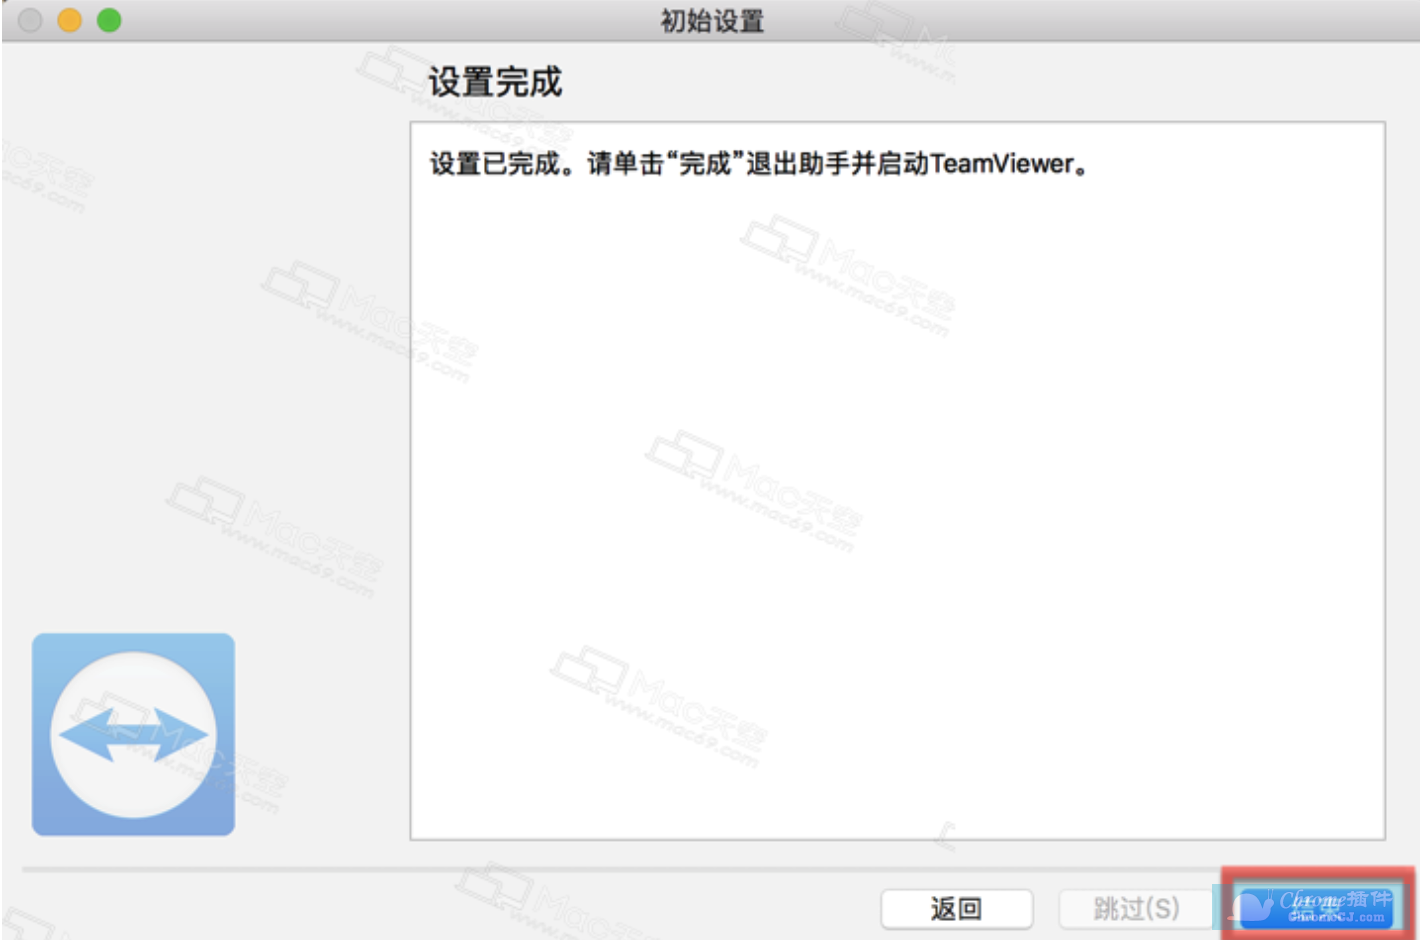 TeamViewer 13 for Mac安装教程